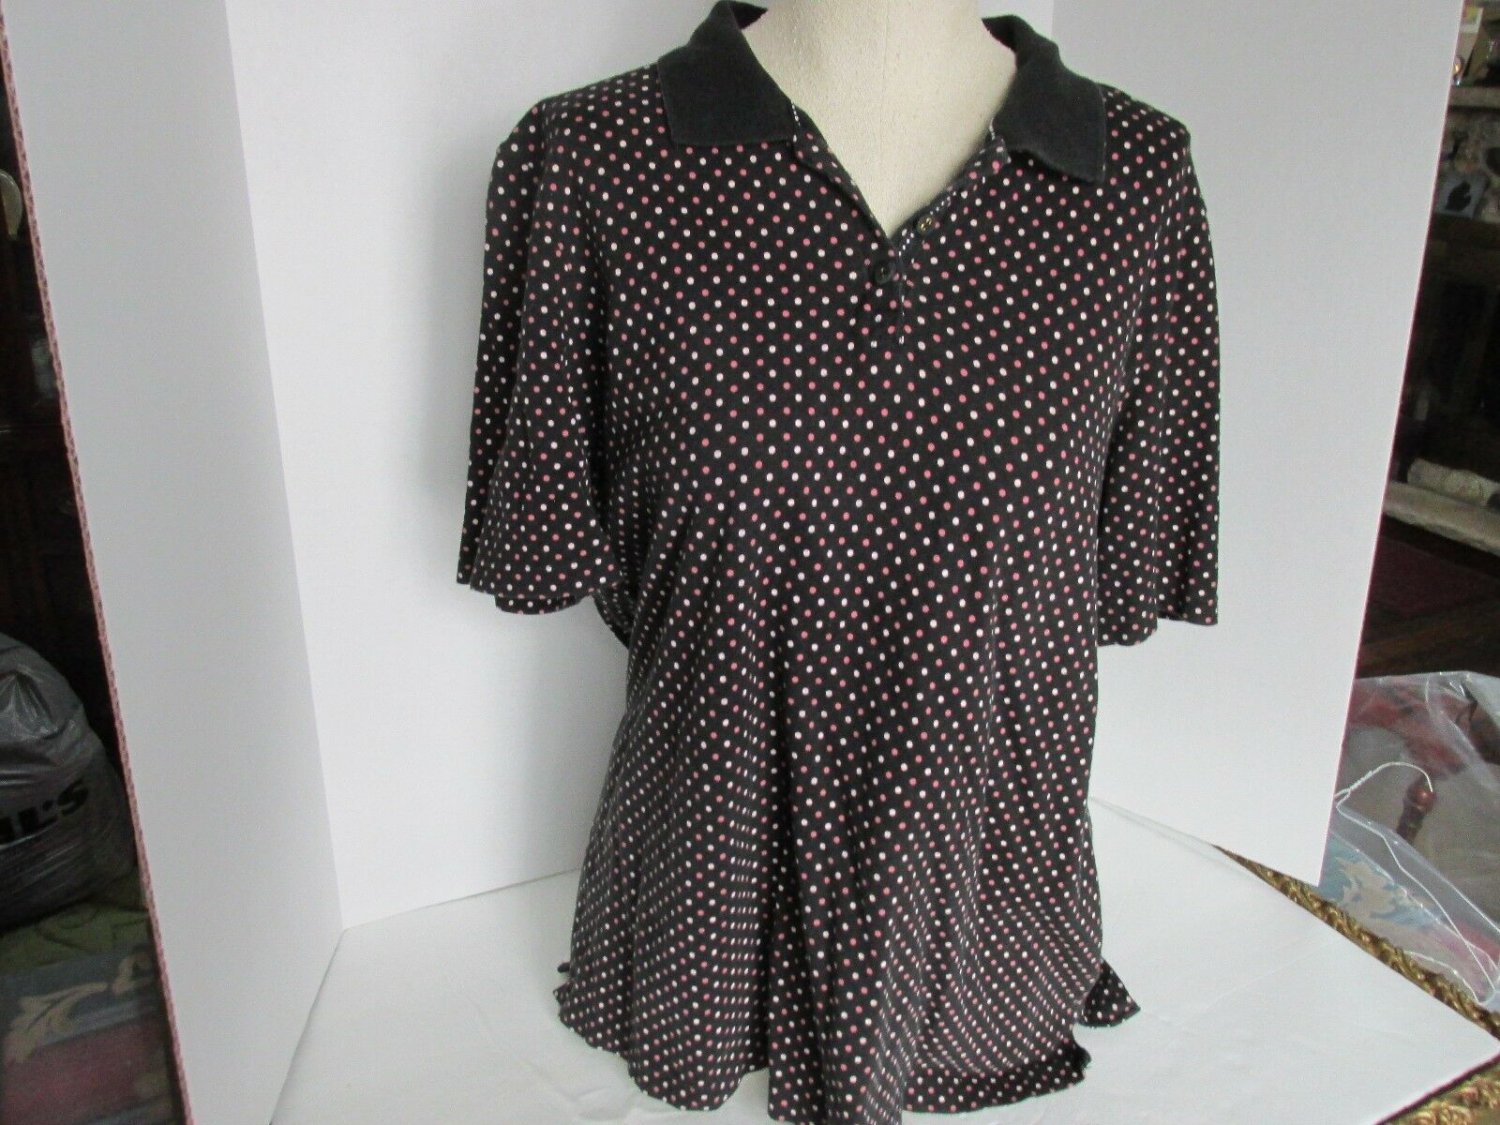 Women's White Stag Polka Dot Golf Shirt, Size XL - Plus 16-18, Black/Pink